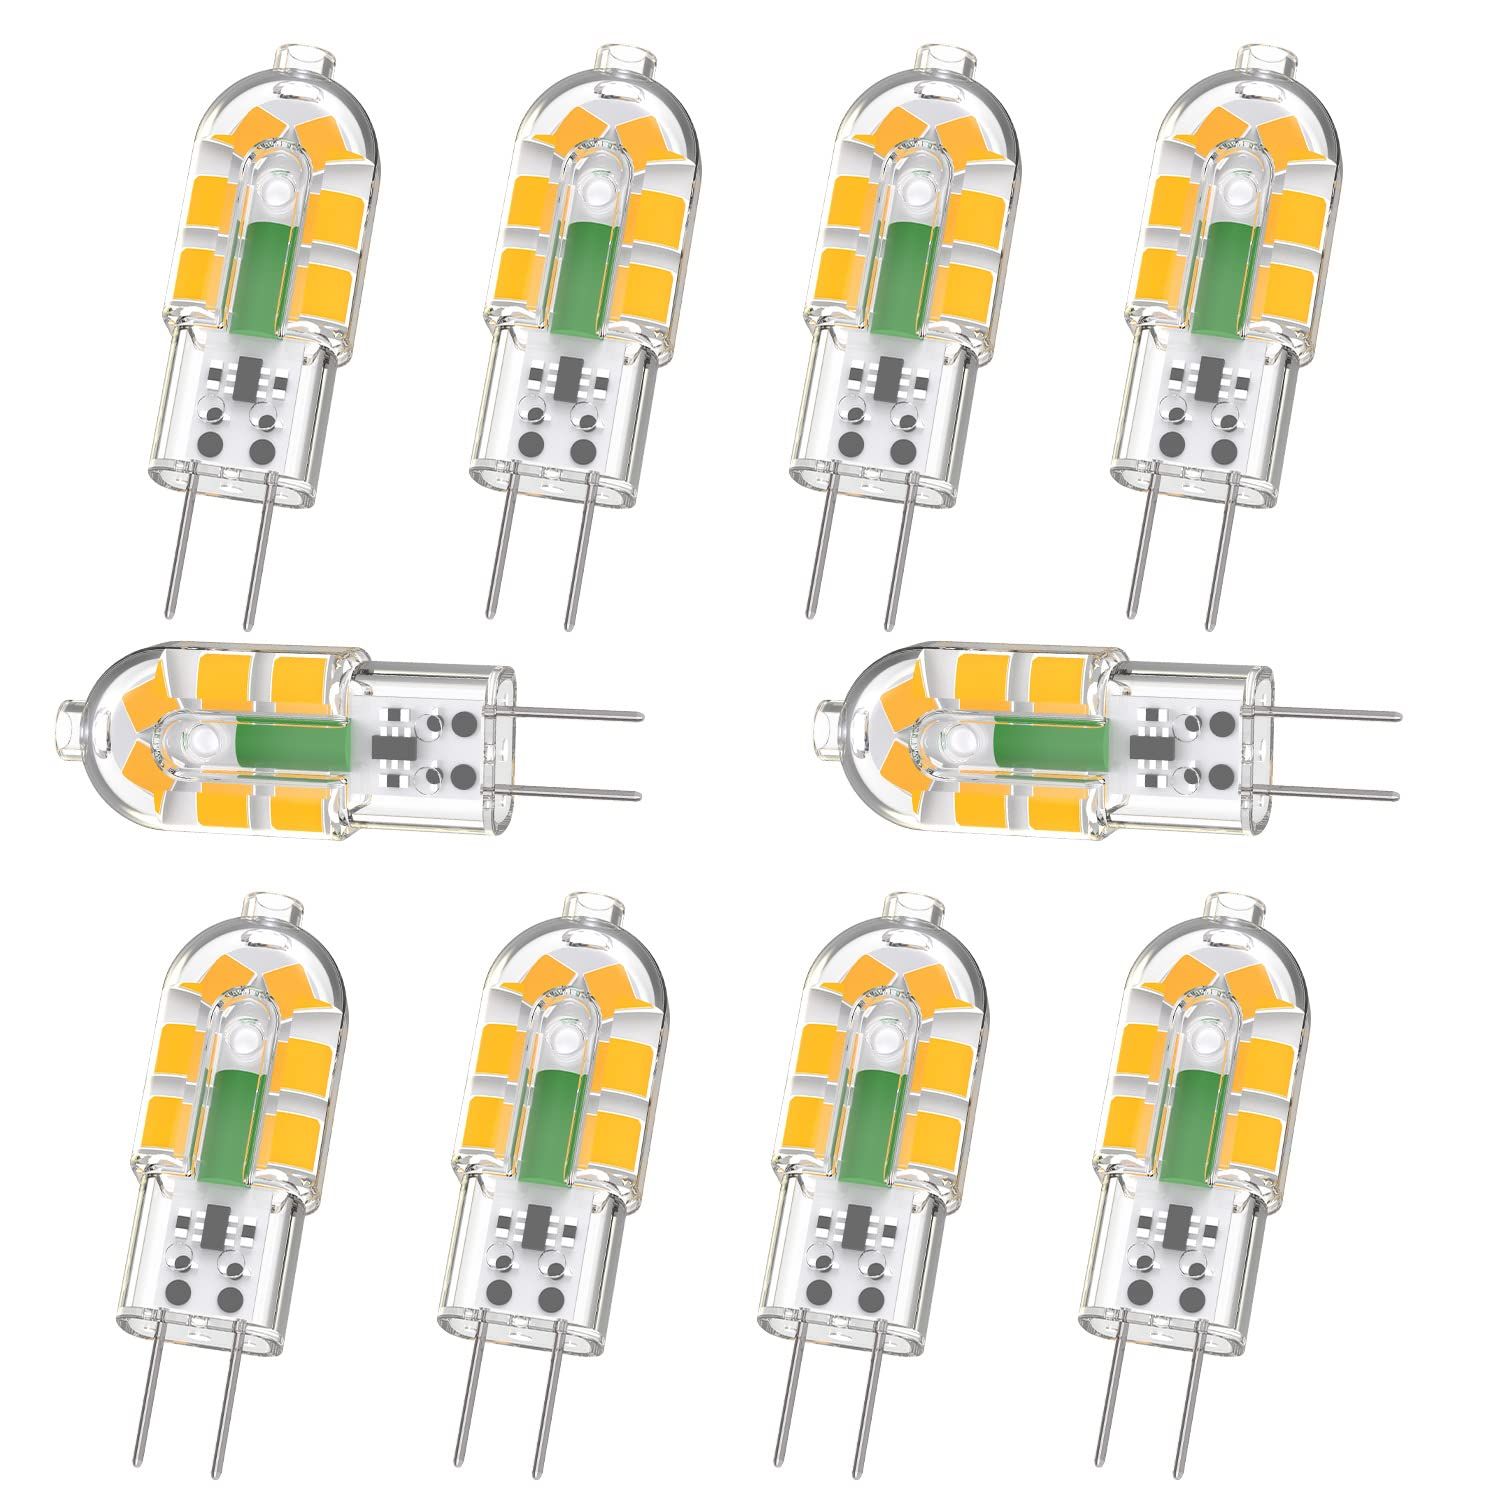 G4 led bulbs 100 Packs